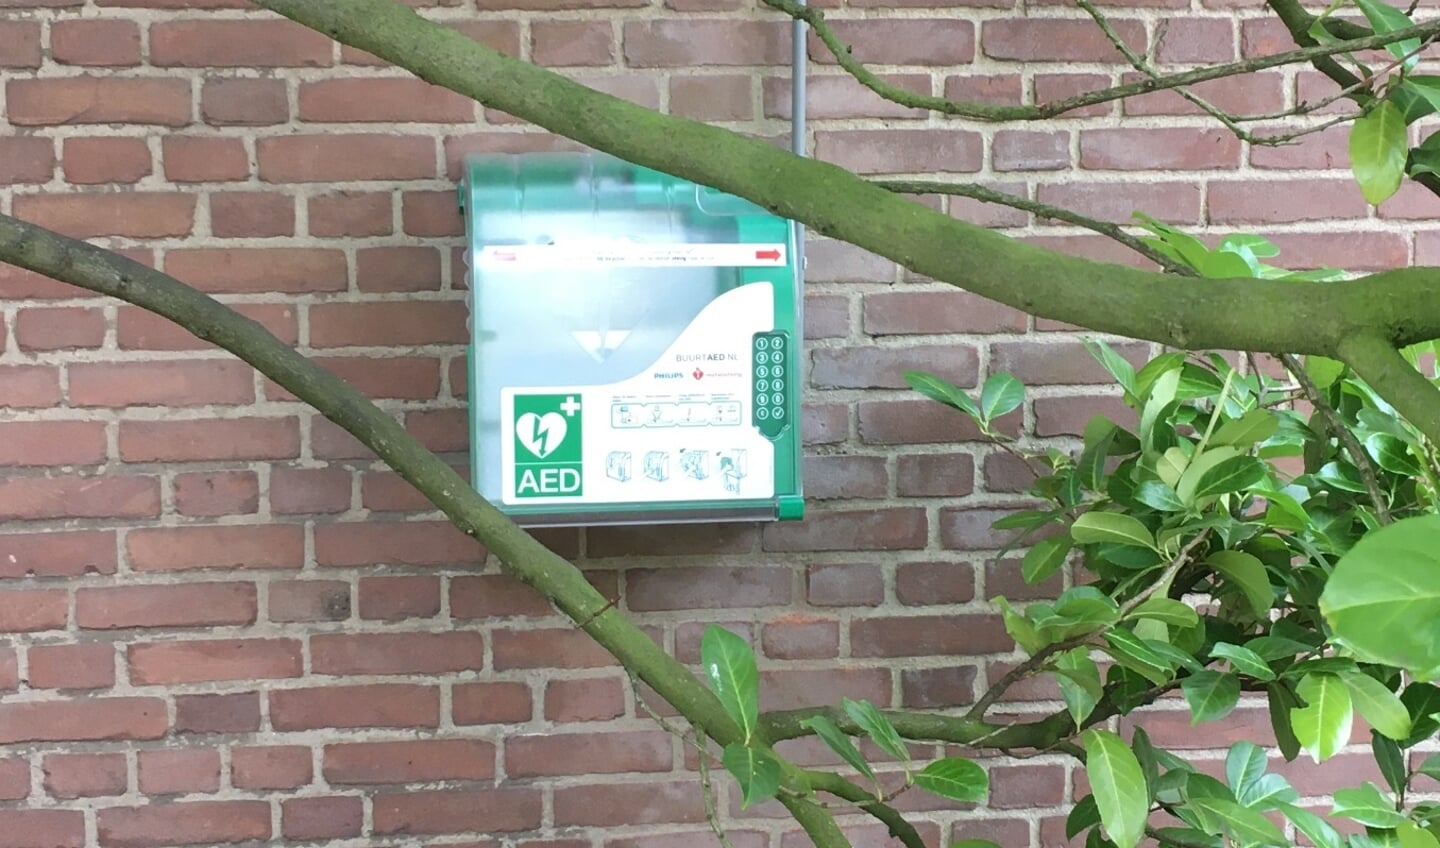 Sinds kort hangt er een AED bij de Michaelkerk.